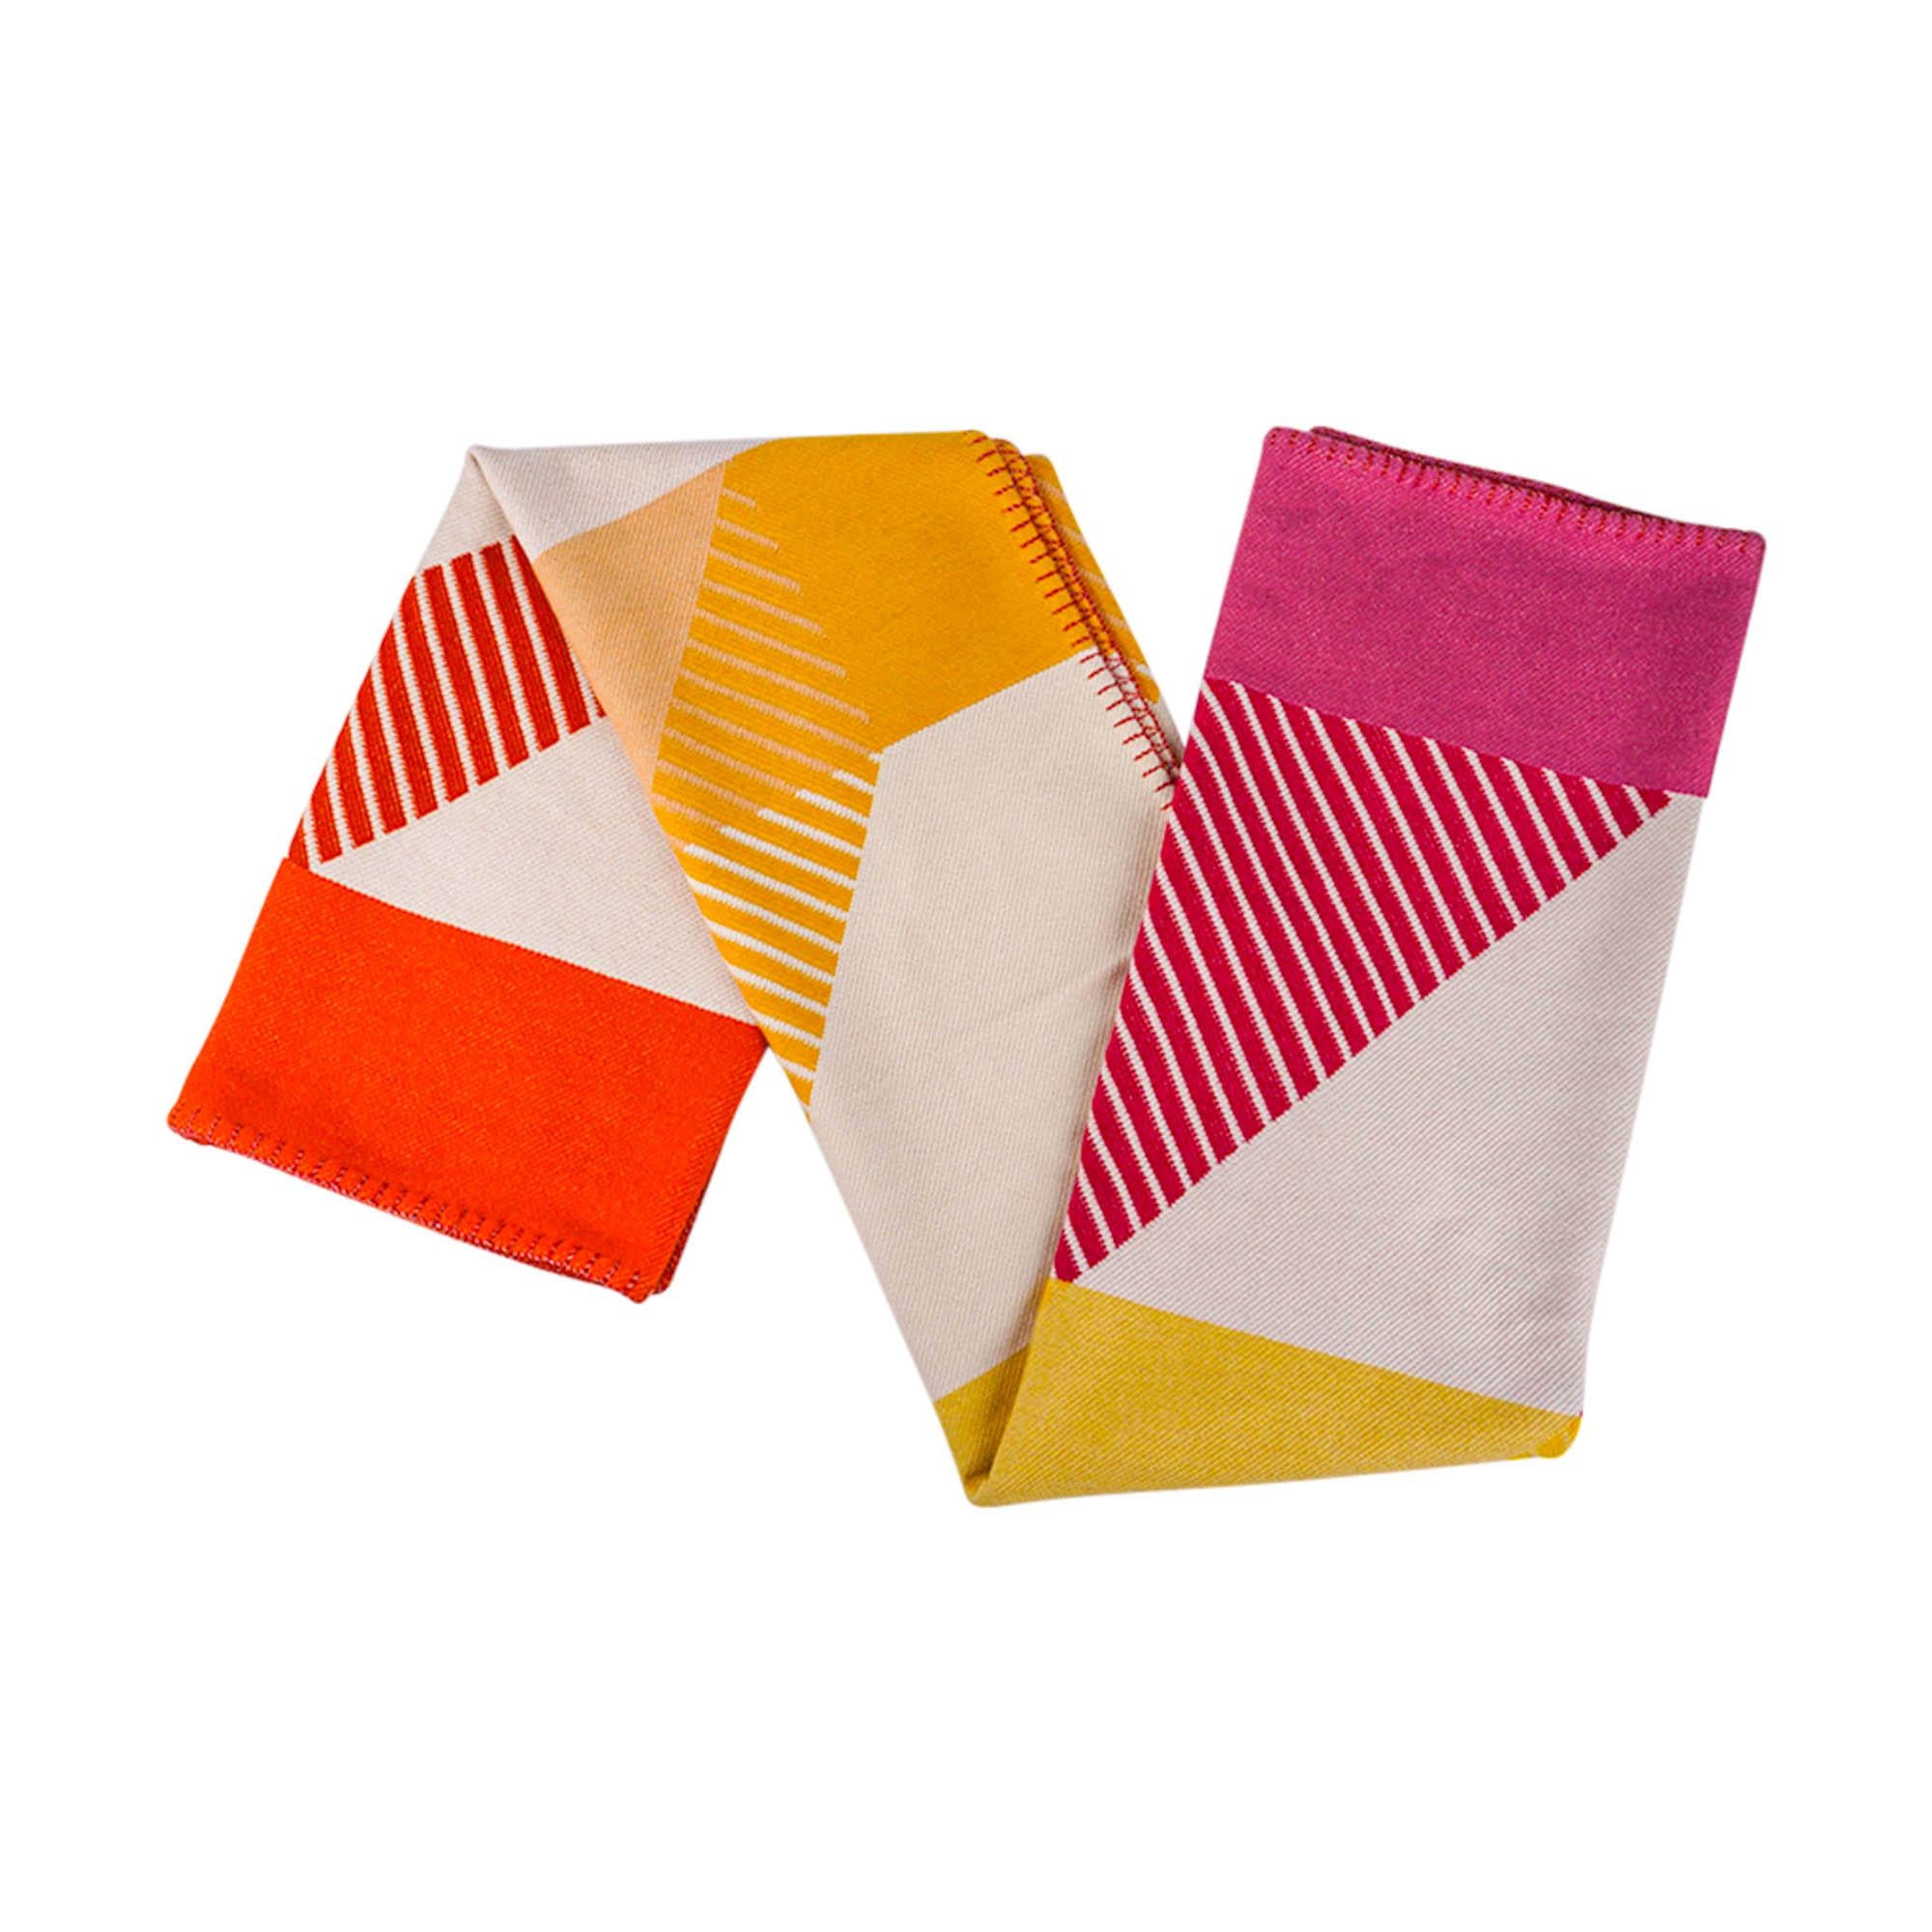 Mightychic bietet eine Hermes H Diagonale-Decke in den Farben Petunia und Mandarine an.
Inspiriert von einer Hermes-Werbung aus dem Jahr 1929 für männliche und weibliche Accessoires.
Der Name H Diagonal stammt aus dem Art-Déco-Stil der